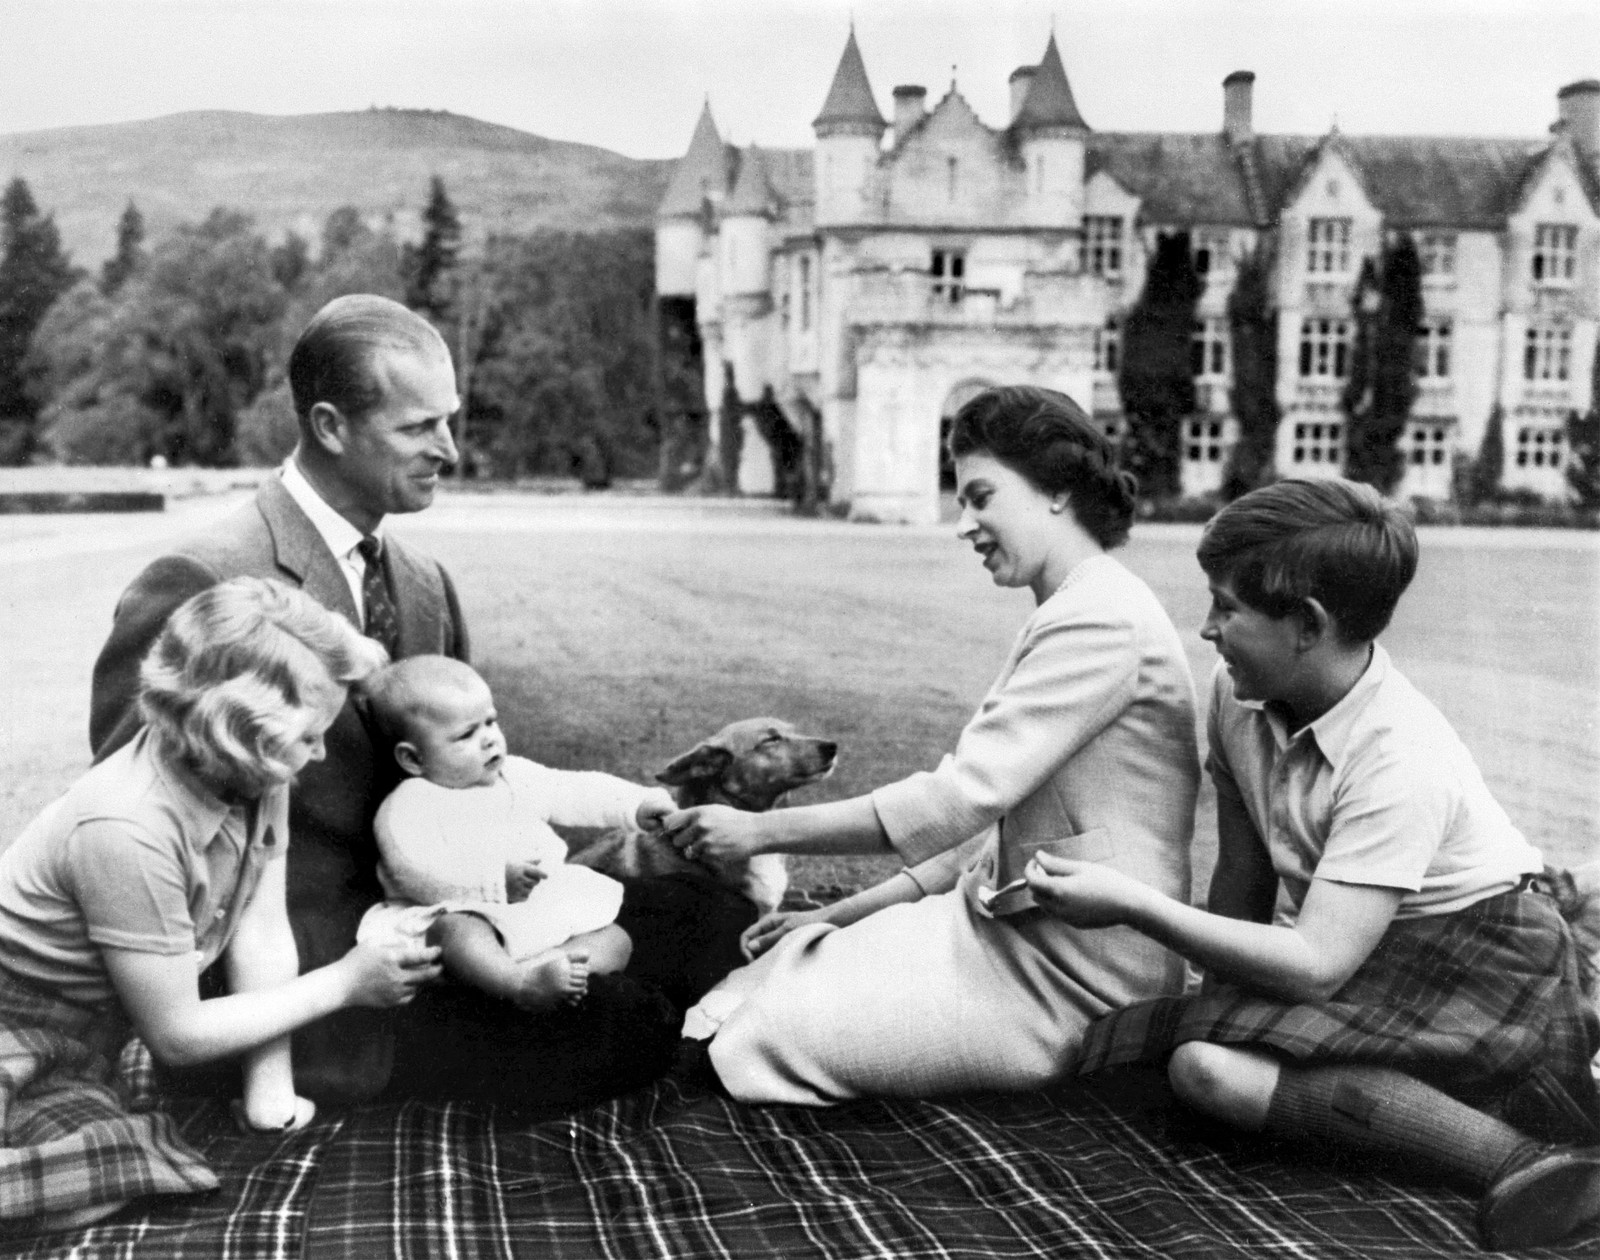 A Rainha Elizabeth II, o príncipe britânico Philip, duque de Edimburgo, e seus três filhos, Príncipe Charles, Princesa Anne e Príncipe Andrew posam nos terrenos do Castelo de Balmoral, perto da vila de Crathie, em Aberdeenshire, em 1960. — Foto: AFP